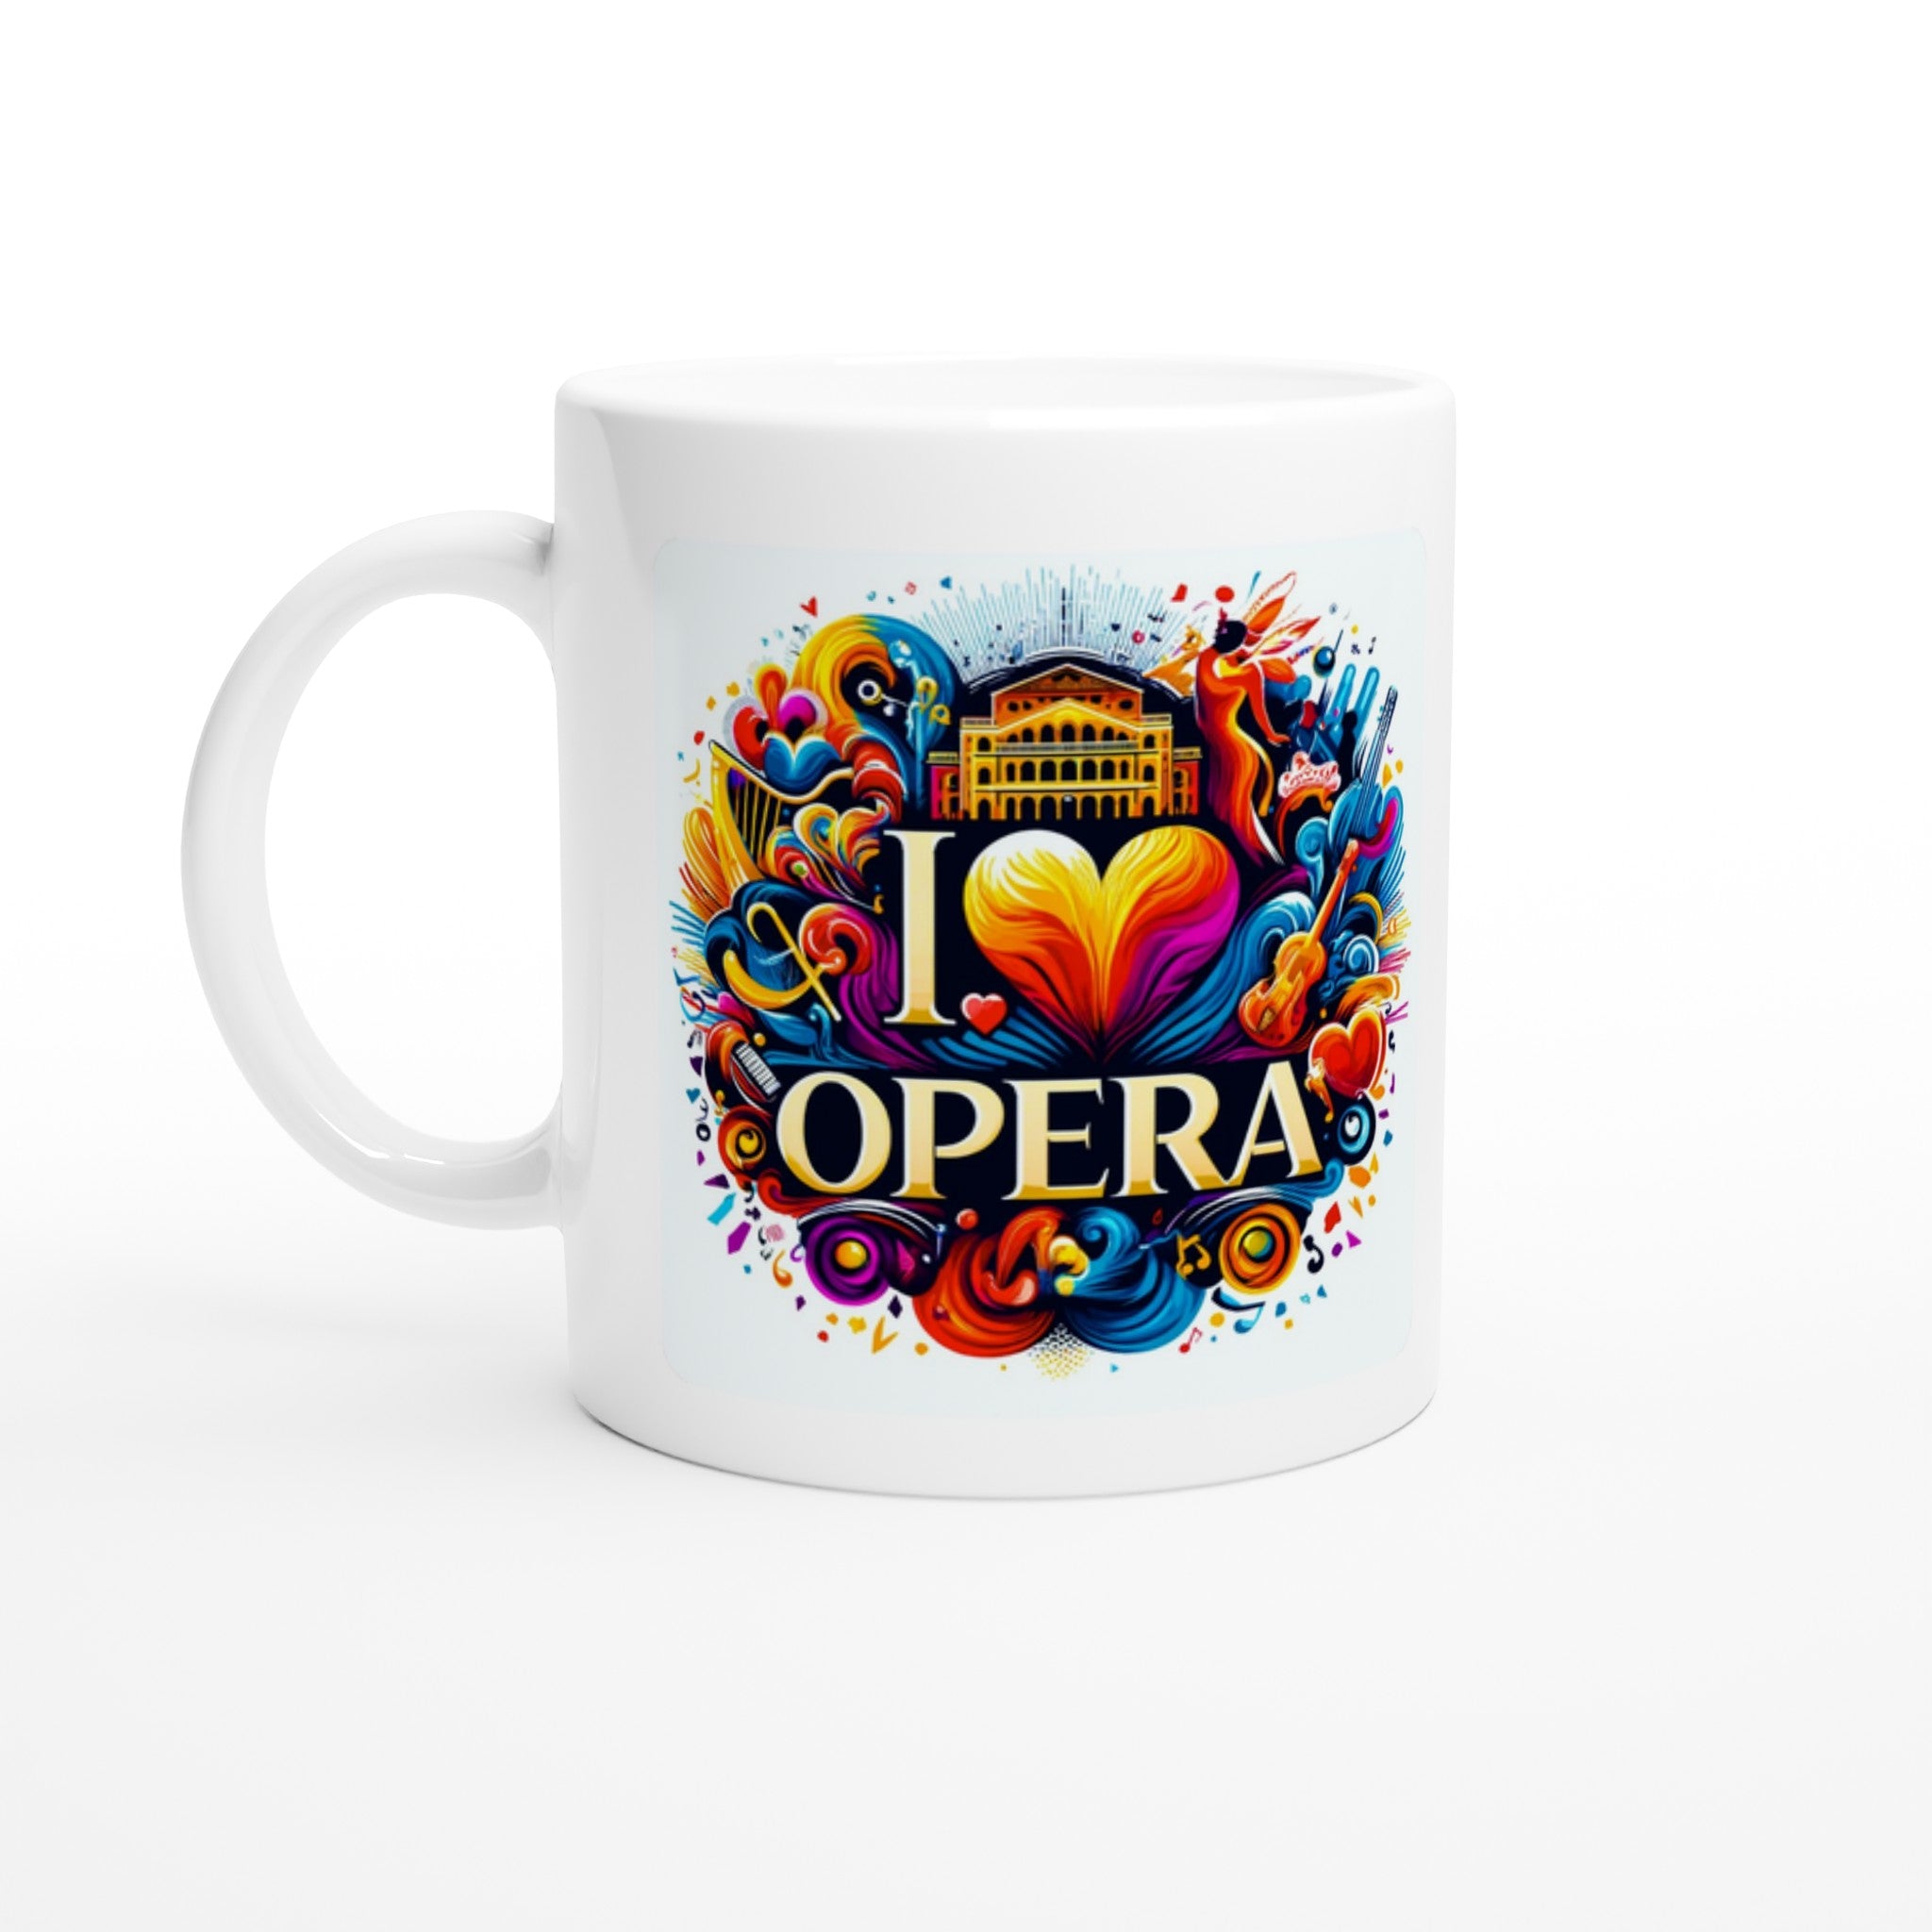 "I Love Opera" White 11oz Ceramic Mug